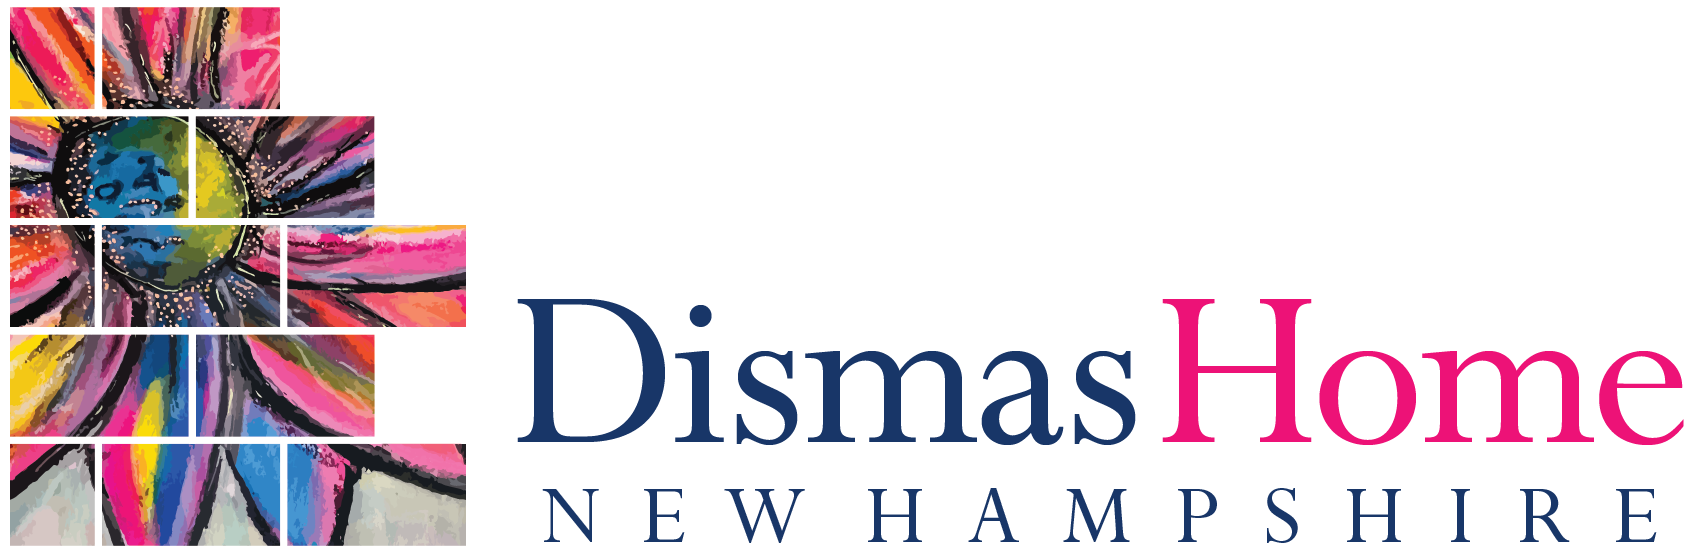 Dismas Home of New Hampshire